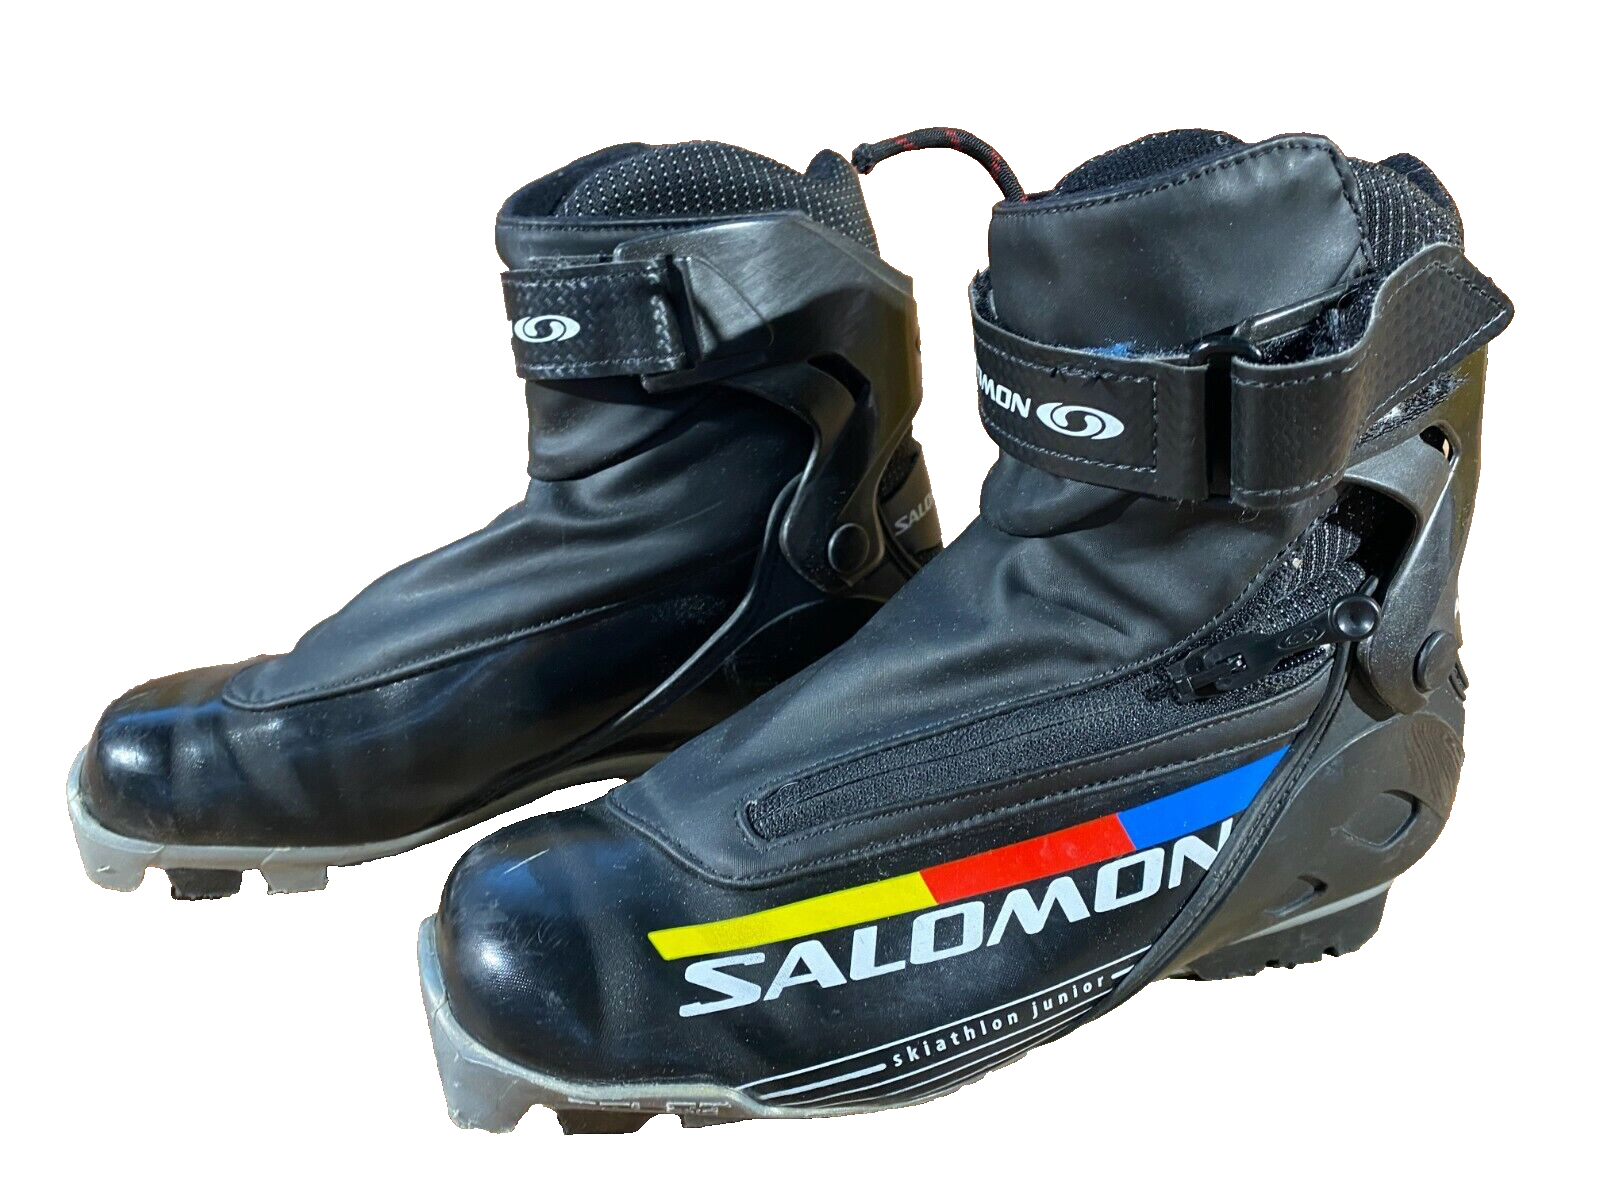 Salomon 6251 Skiathlon Jr. SNS Profil Rent